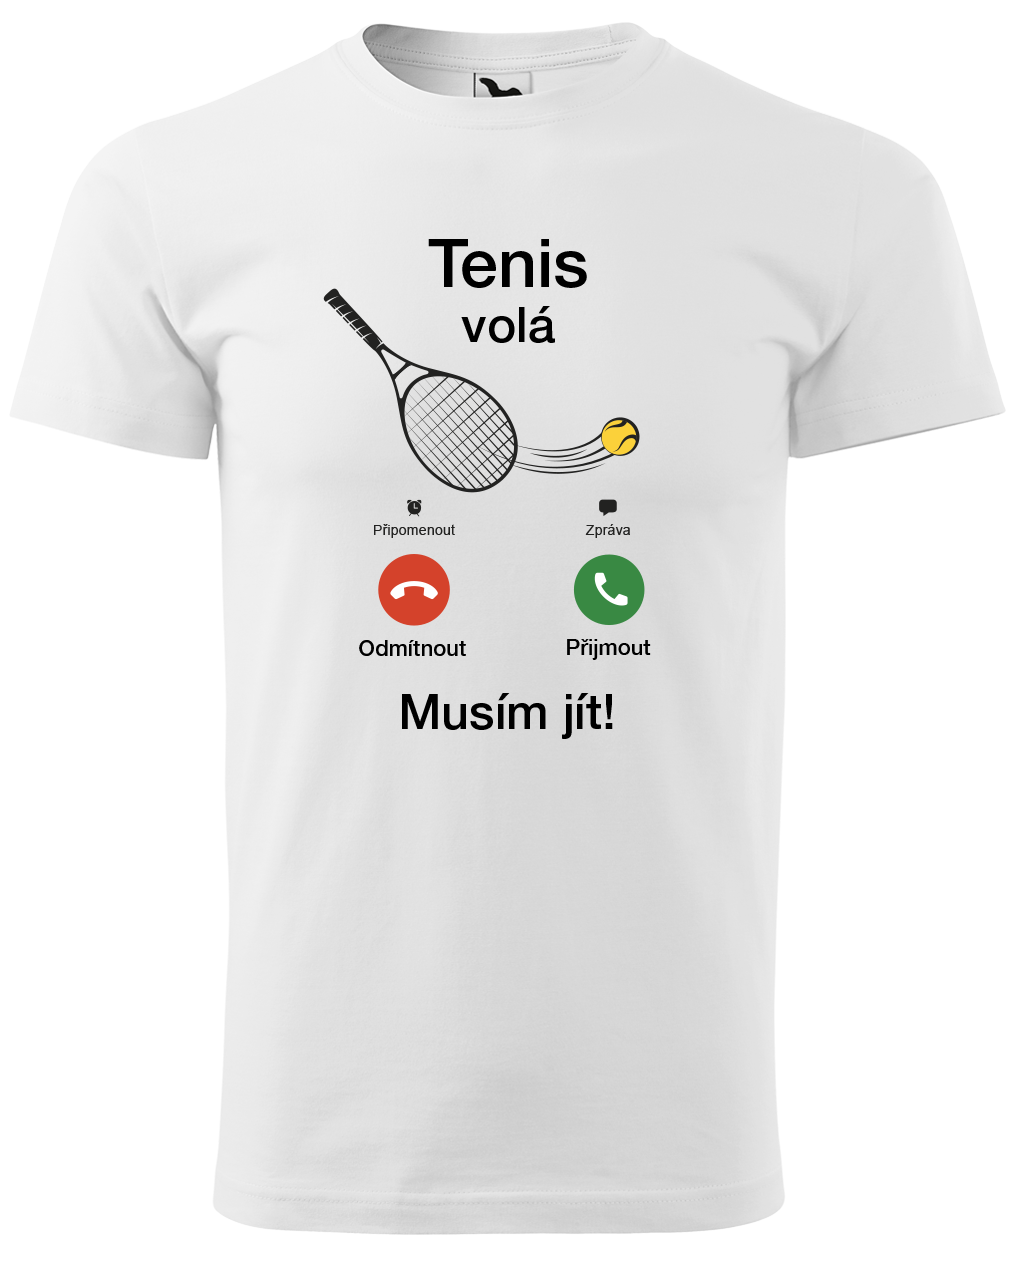 Tenisové tričko - Tenis volá Velikost: M, Barva: Bílá (00)